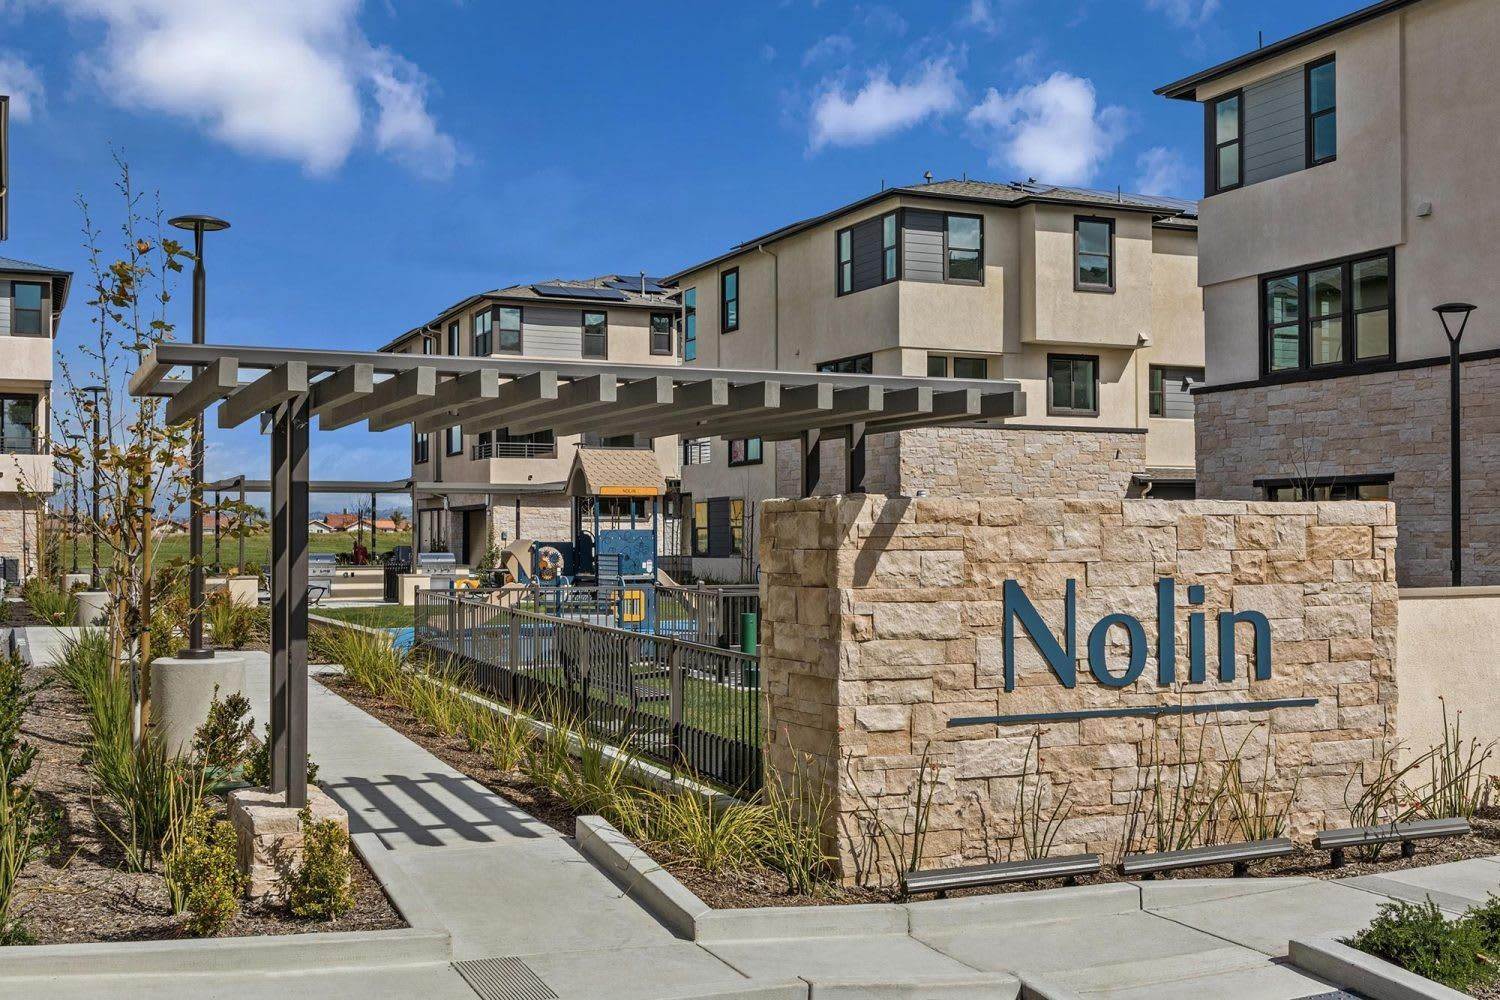 Nolin building at 2941 W. Lincoln Avenue, Unit #1, Anaheim, CA 92801